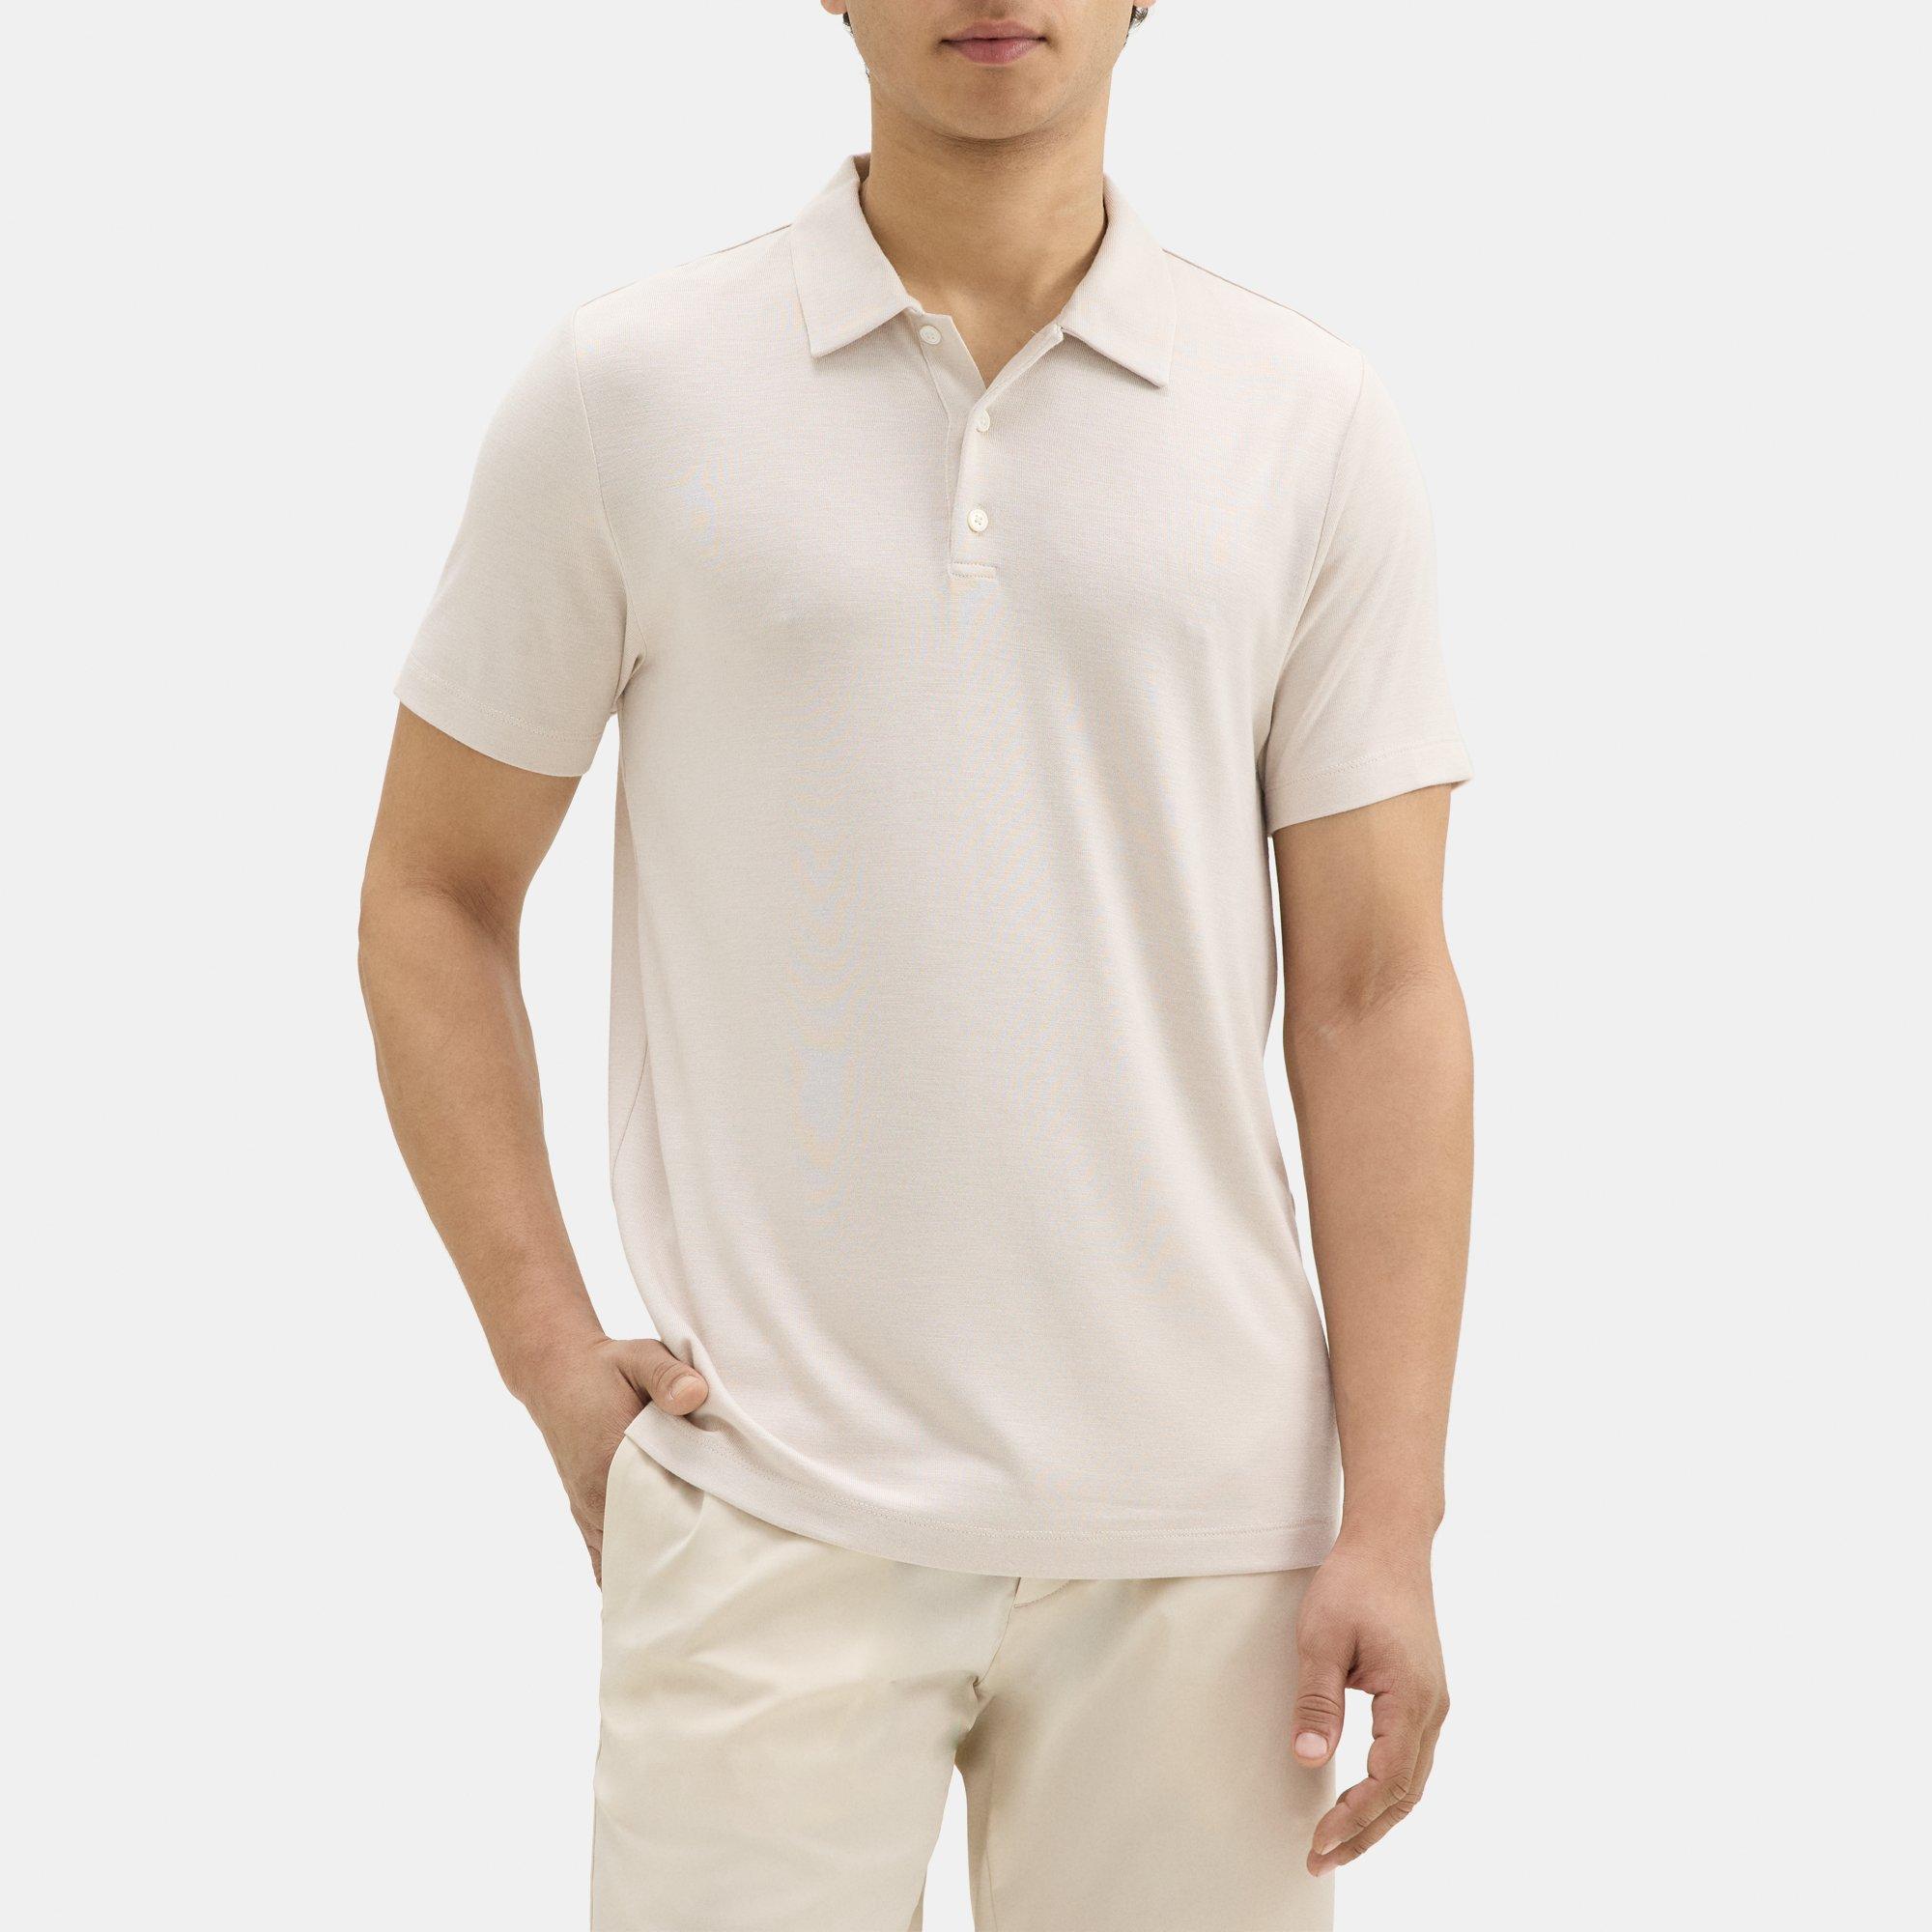 띠어리 Theory Polo Shirt in Modal Blend Jersey,MOON/WHITE